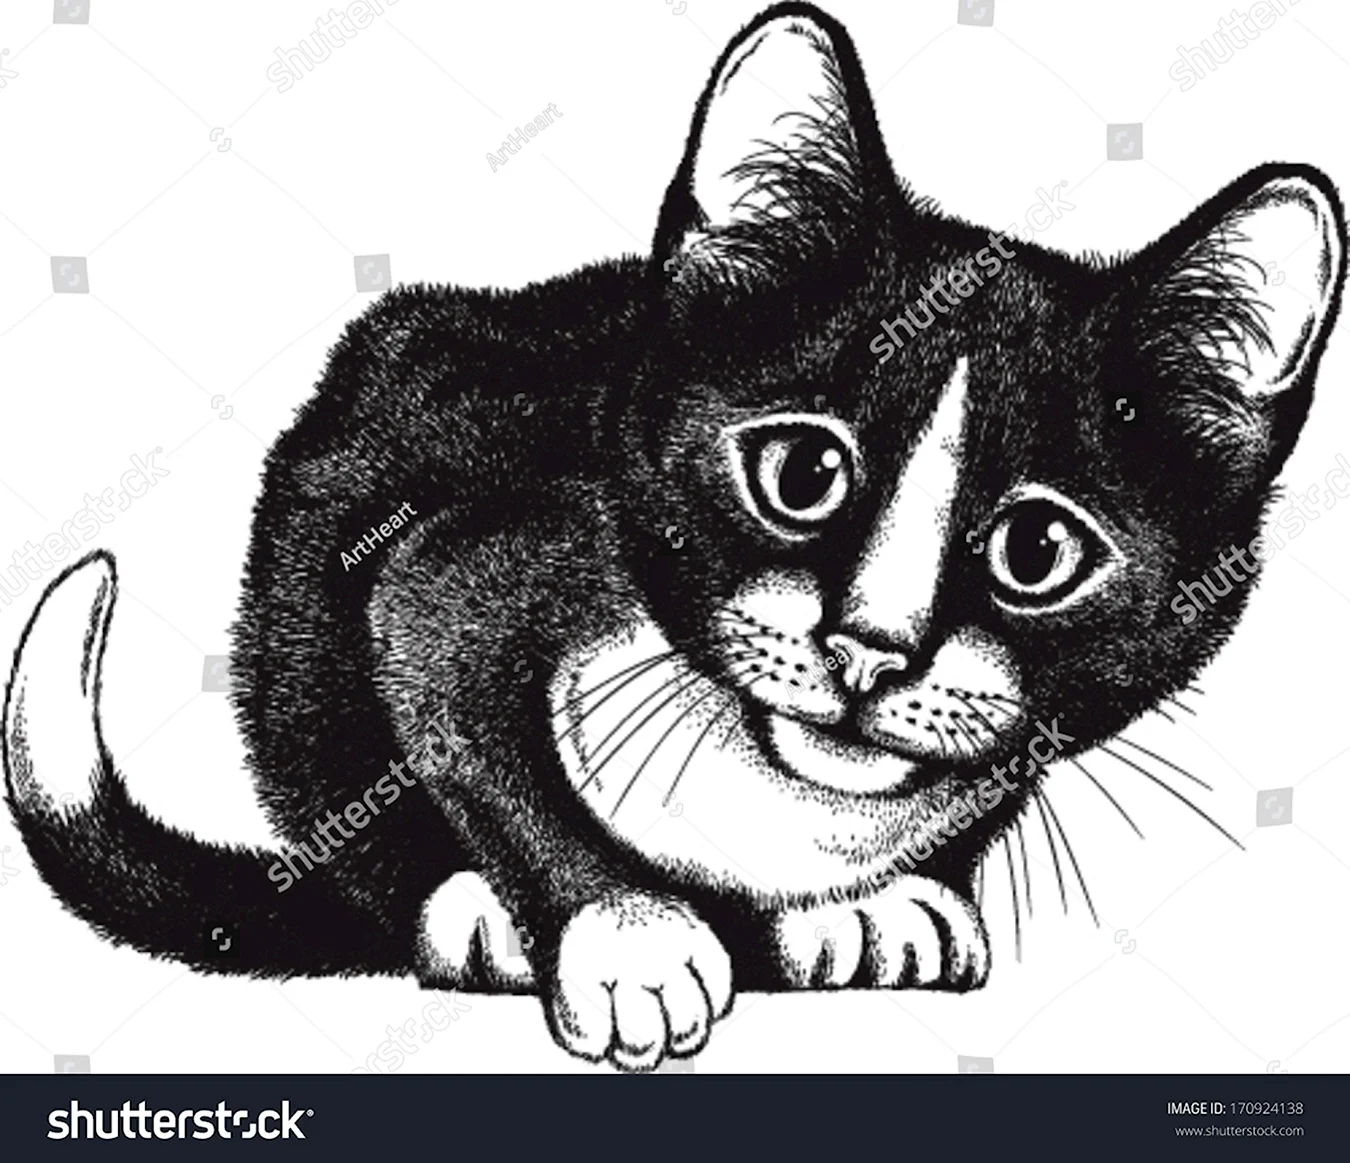 Черно белое изображение кошки. Для срисовки